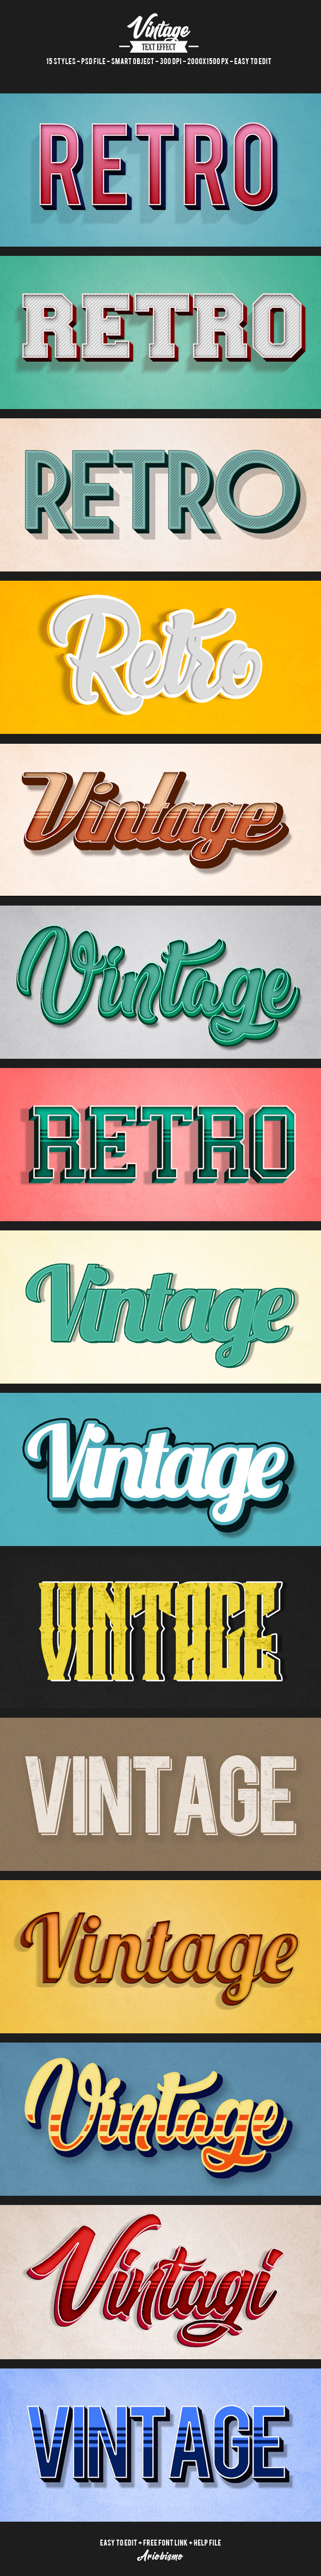 高端50年代60年代70年代3D立体vintage text